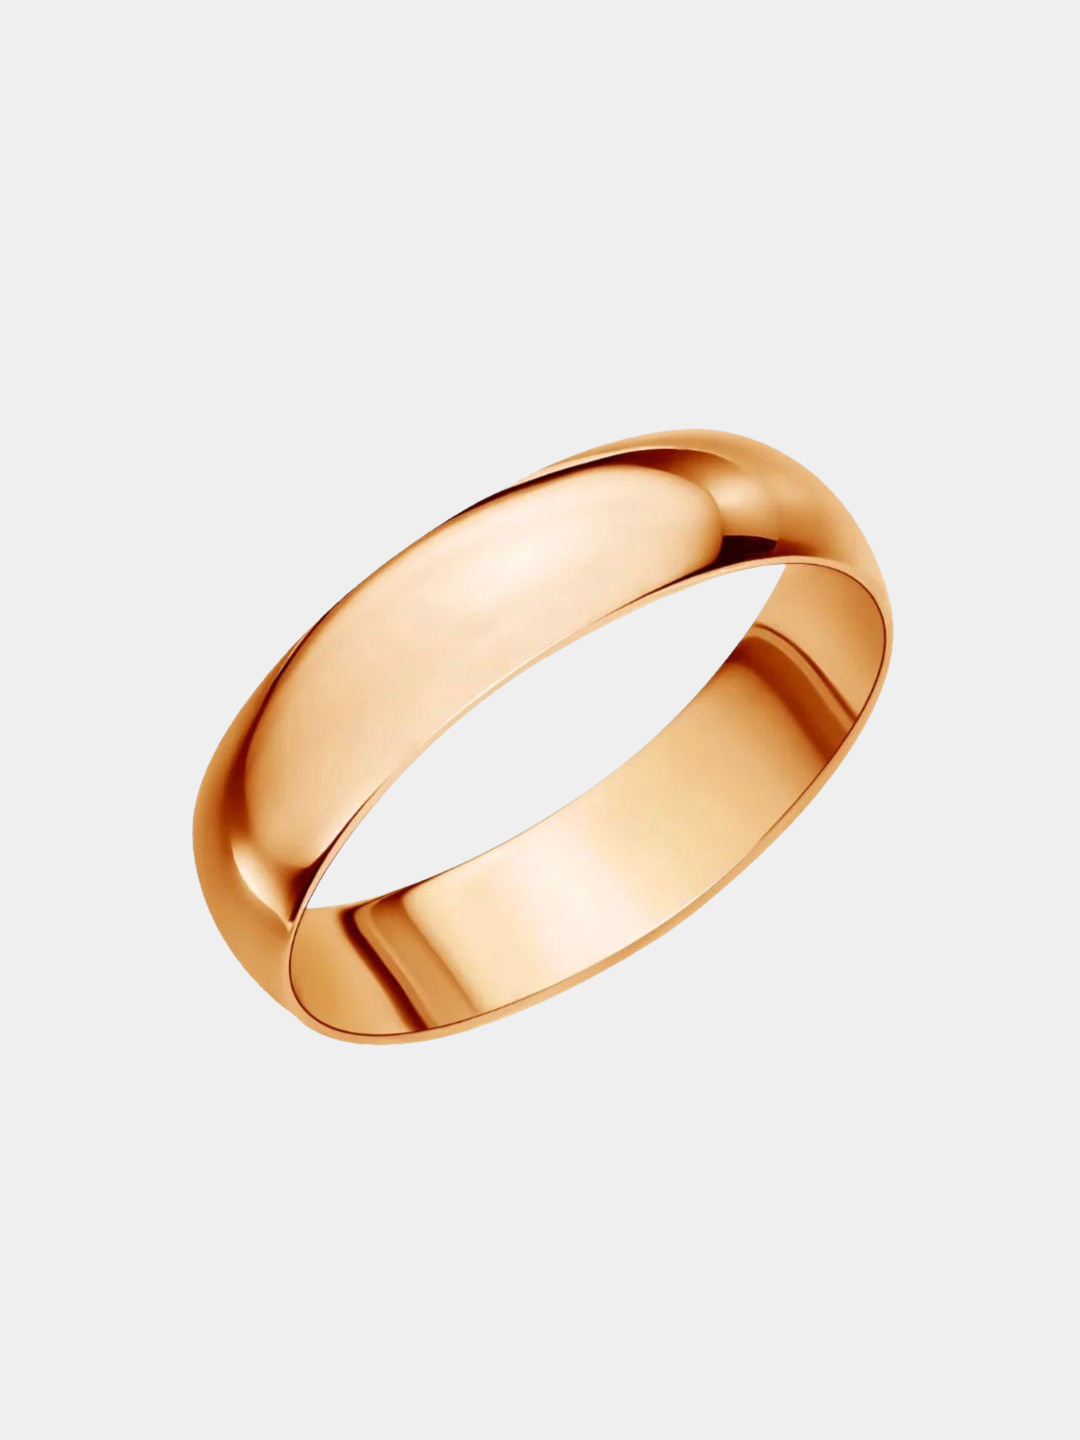 Золотое кольцо обручалка 585